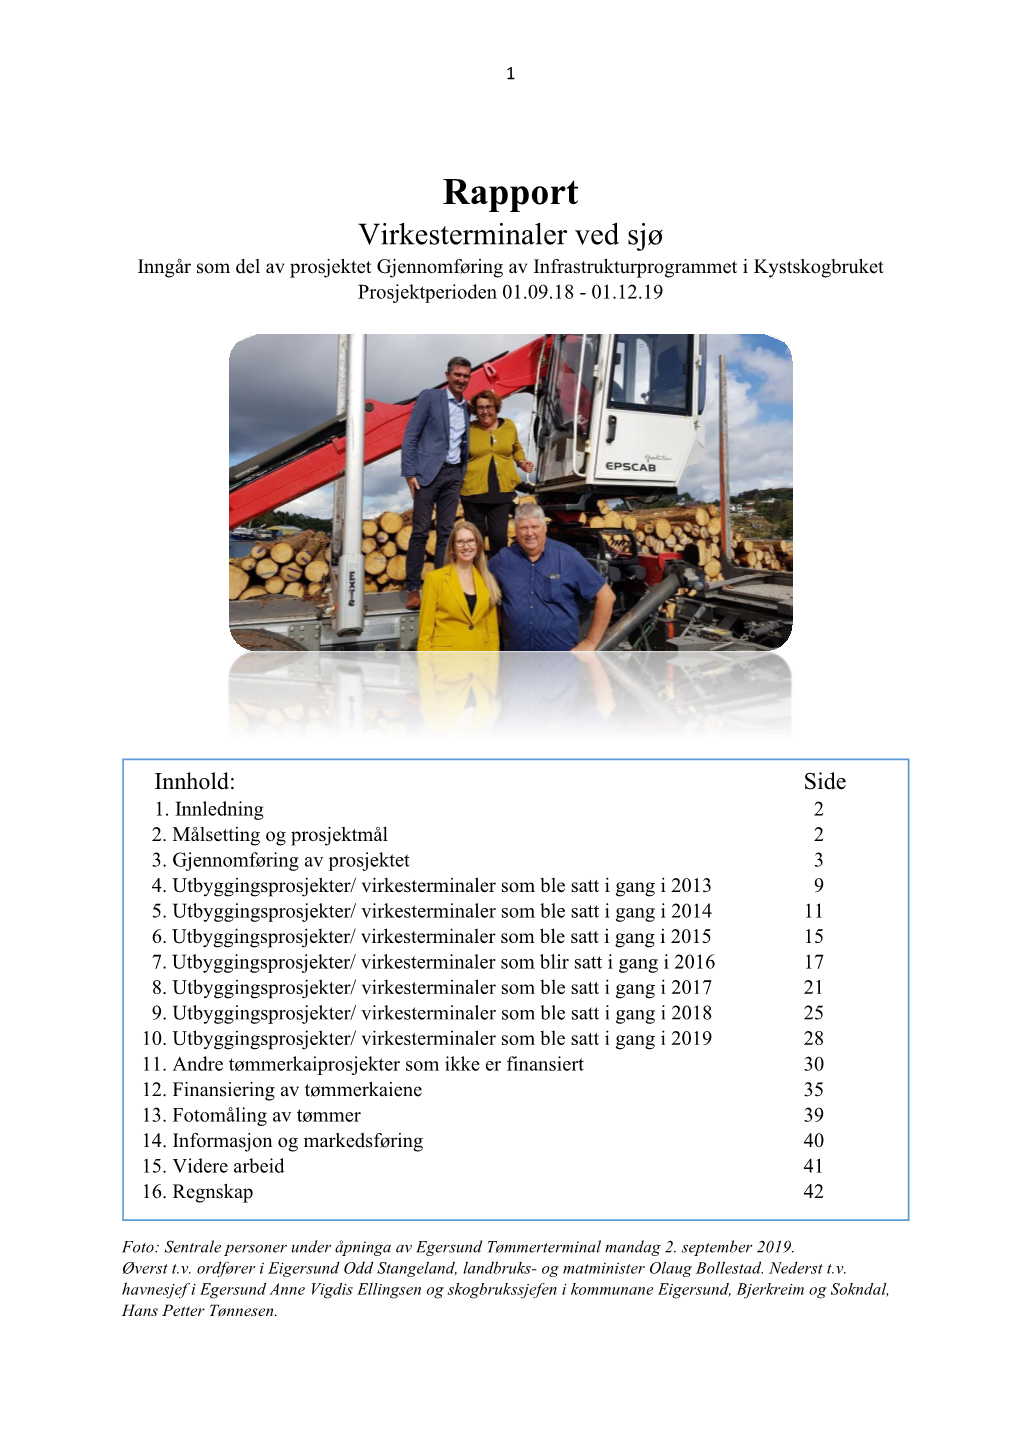 Rapport Virkesterminaler Ved Sjø Inngår Som Del Av Prosjektet Gjennomføring Av Infrastrukturprogrammet I Kystskogbruket Prosjektperioden 01.09.18 - 01.12.19